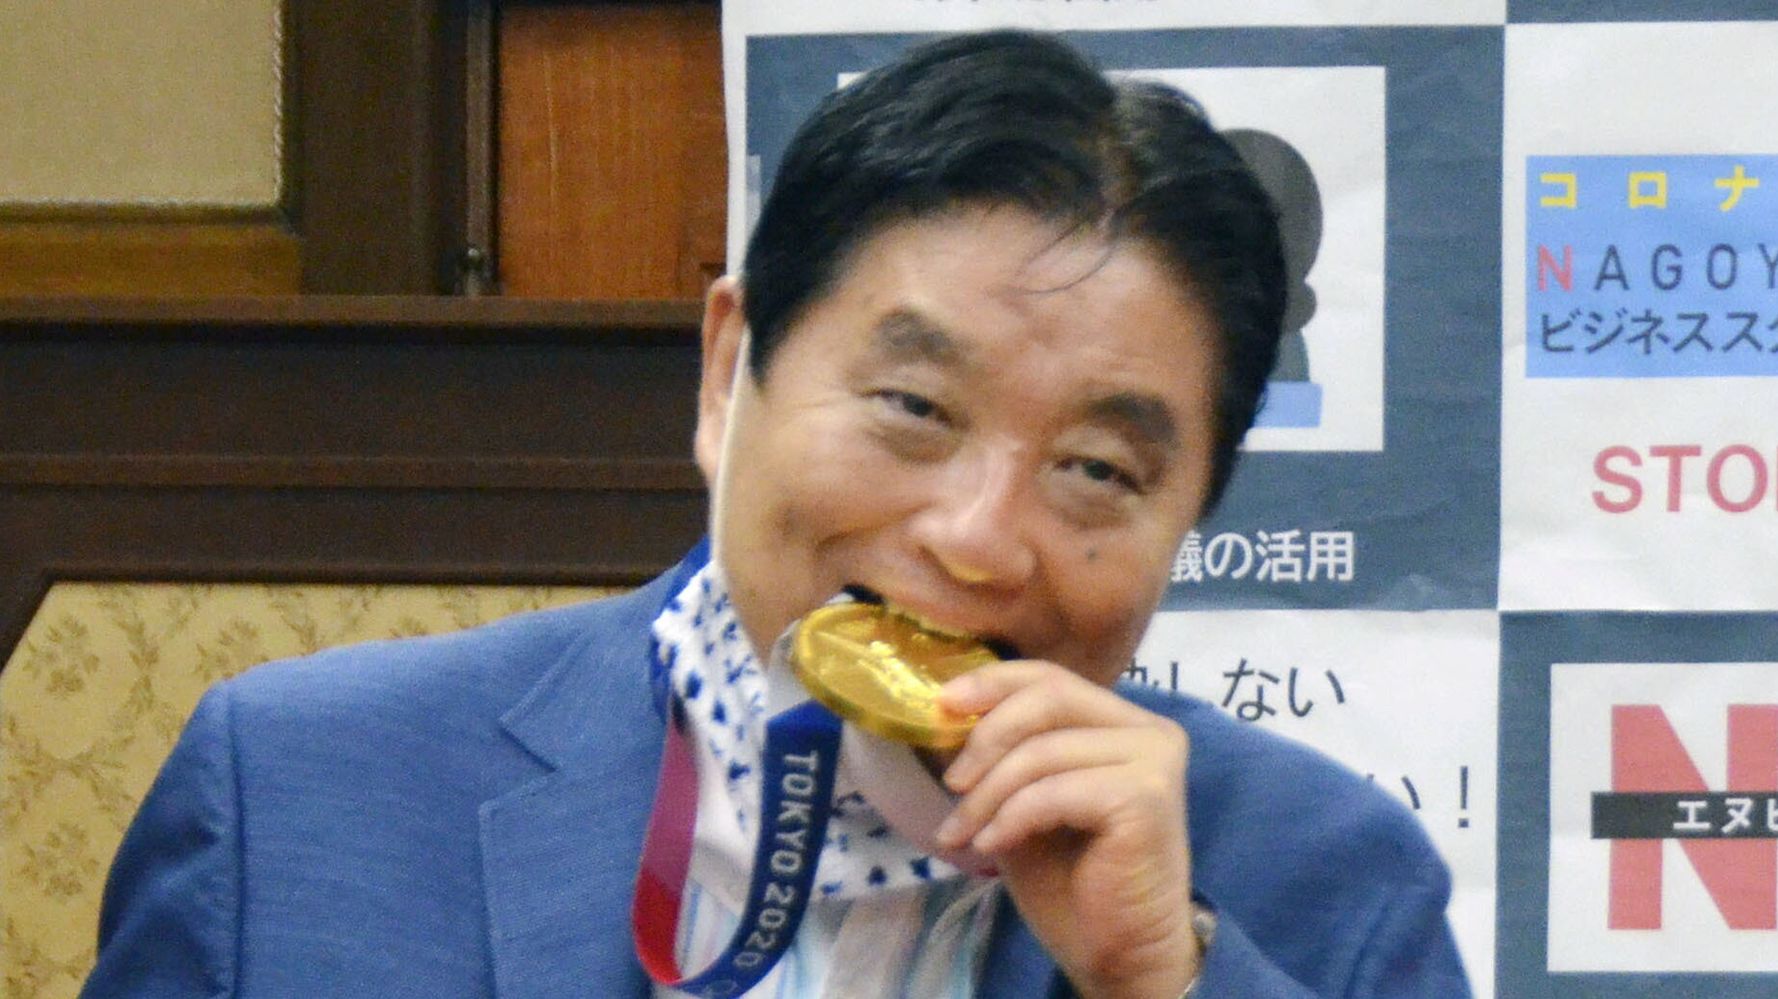 Japanese Mayor Draws Rebuke For Chomping Olympian's Gold Medal